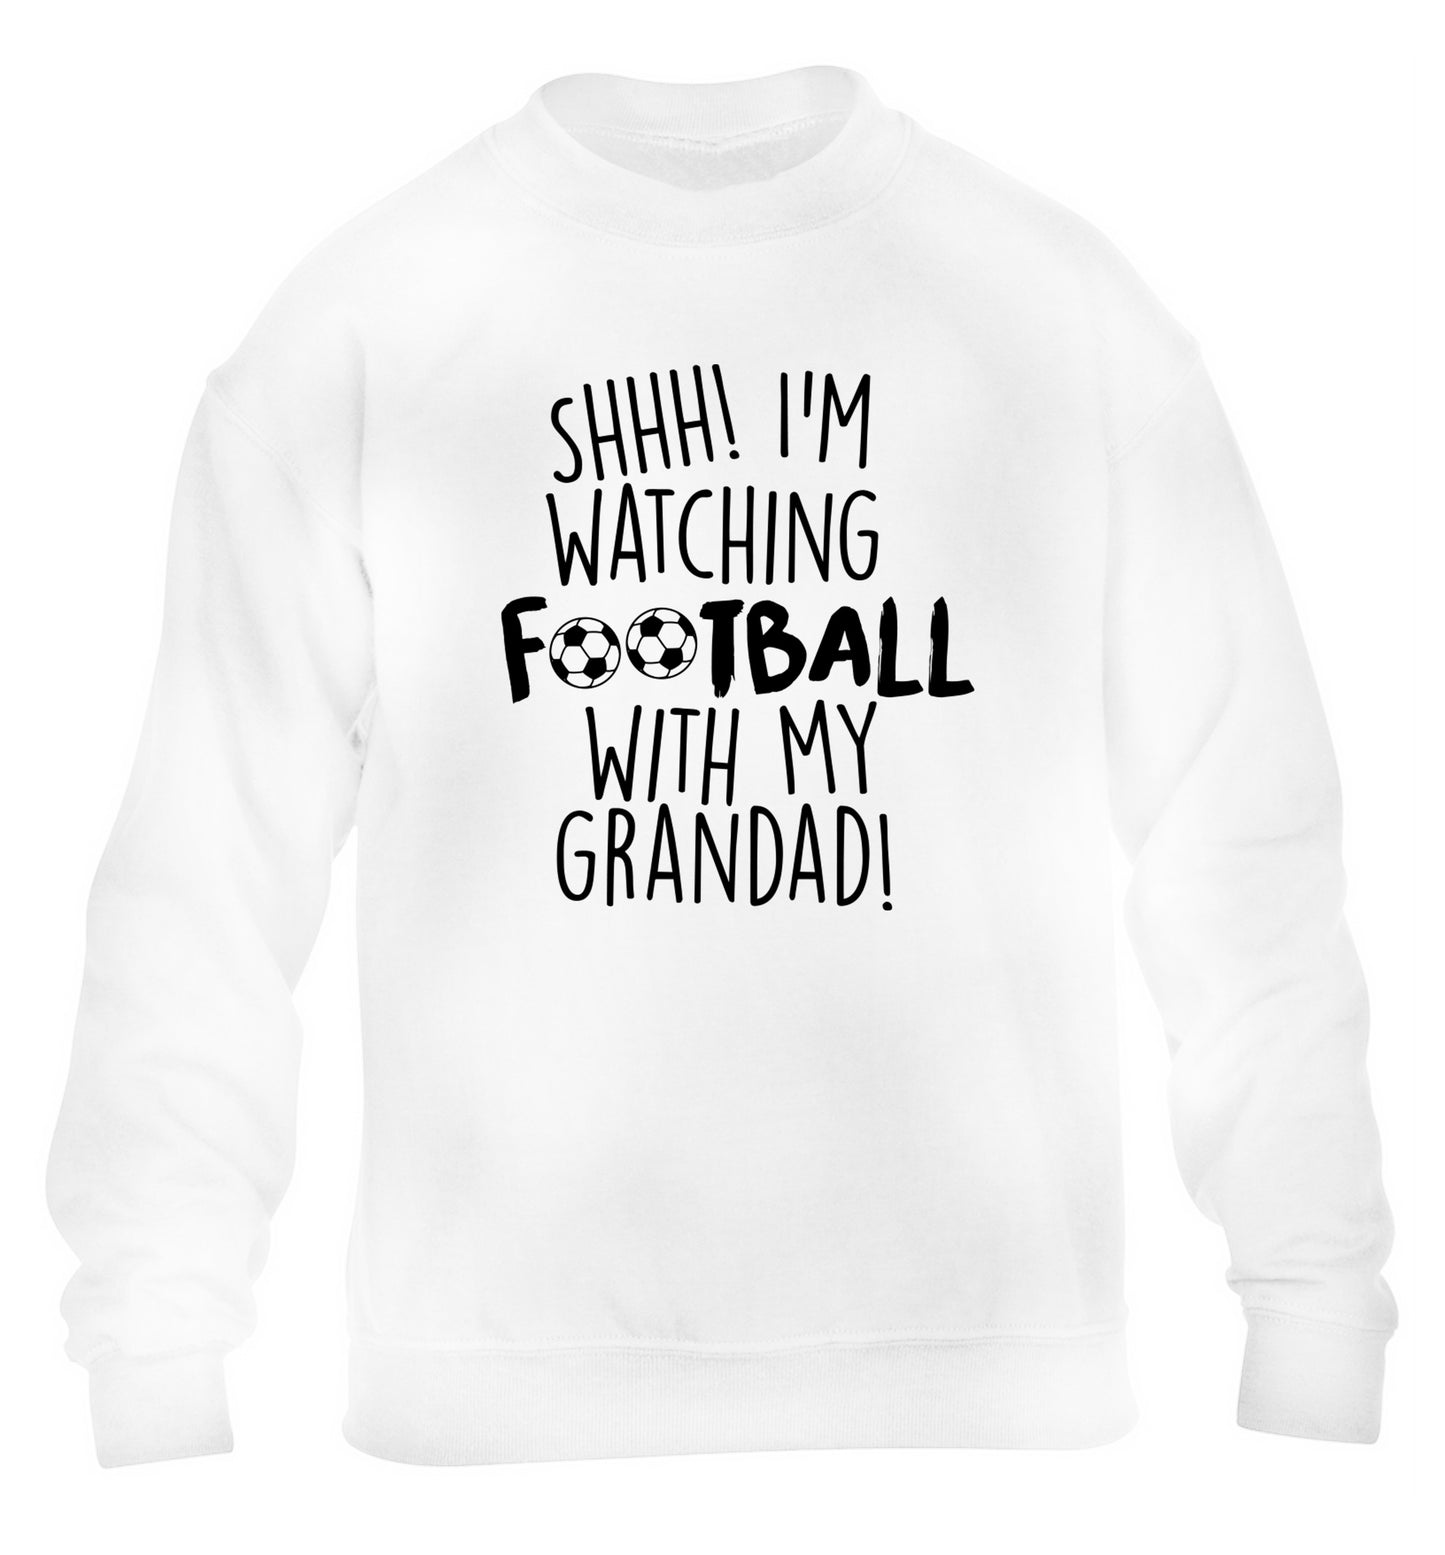 Shhh I'm watching football with my grandad children's white sweater 12-14 Years